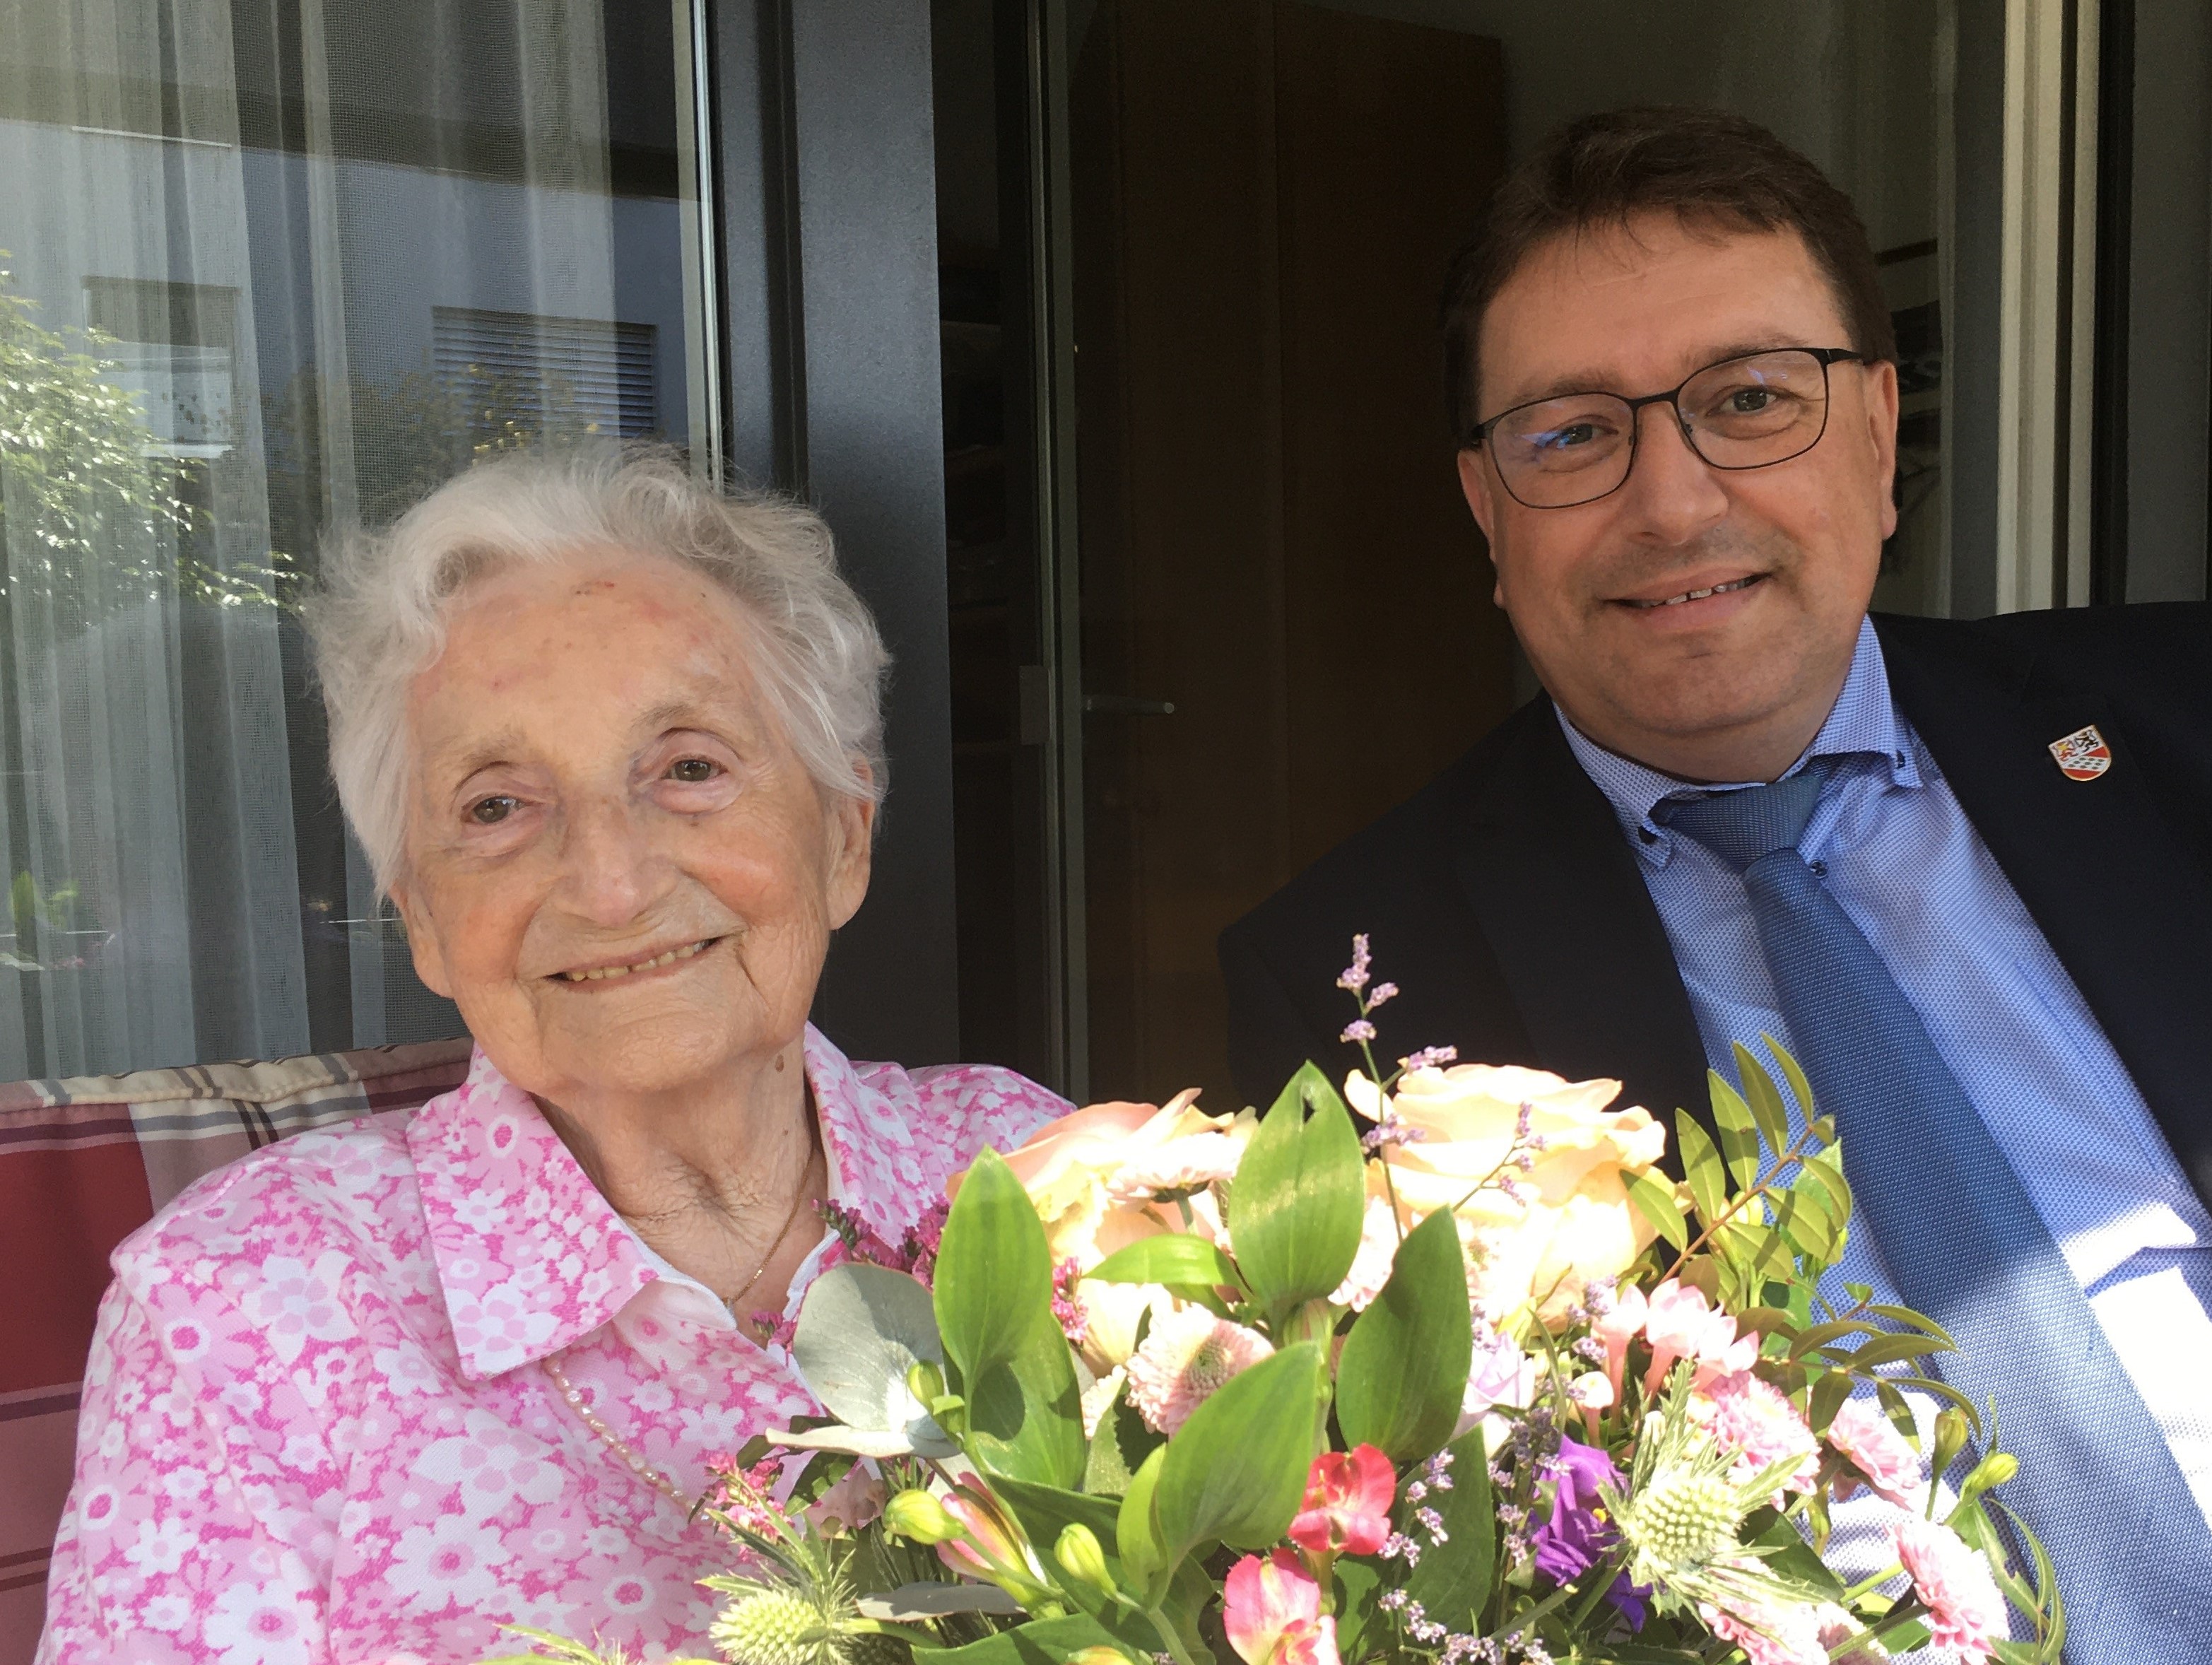 Am 1. September 2021 durfte Frau Elsa Bösch ihren 90. Geburtstag feiern.
Die Gemeindebehörden gratulieren herzlich dazu!